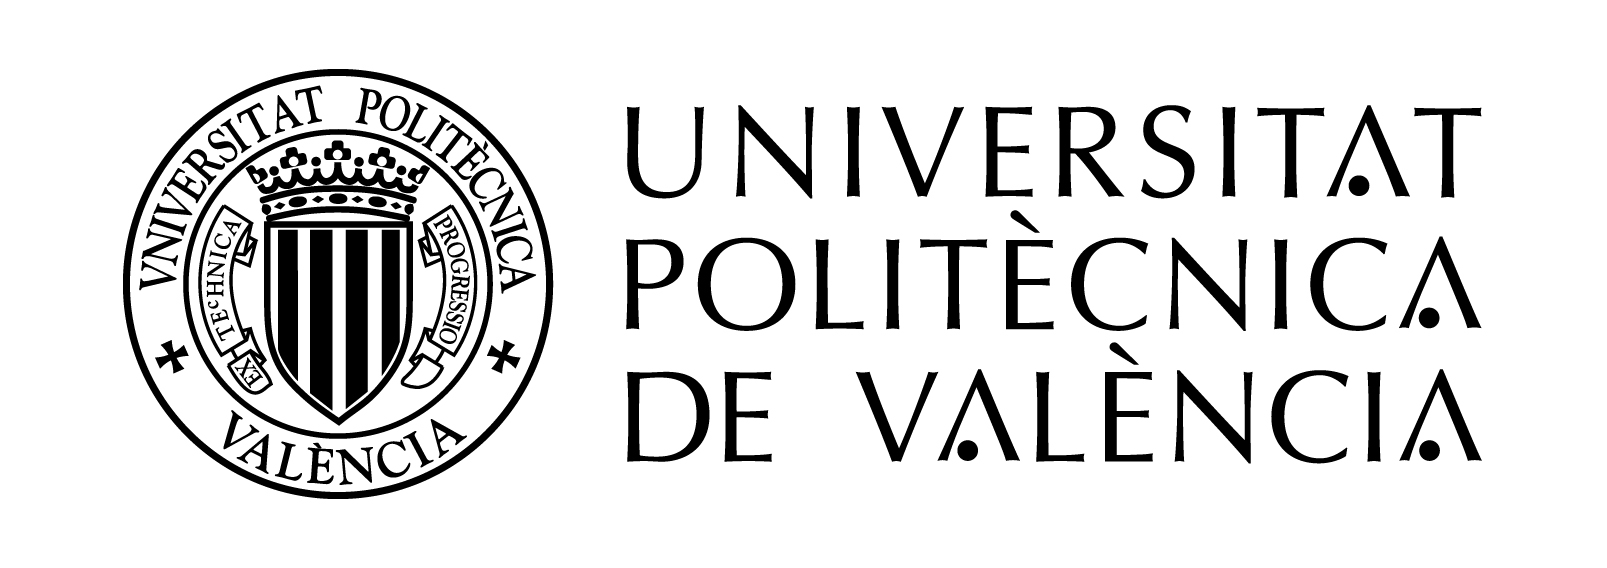 University Valencia